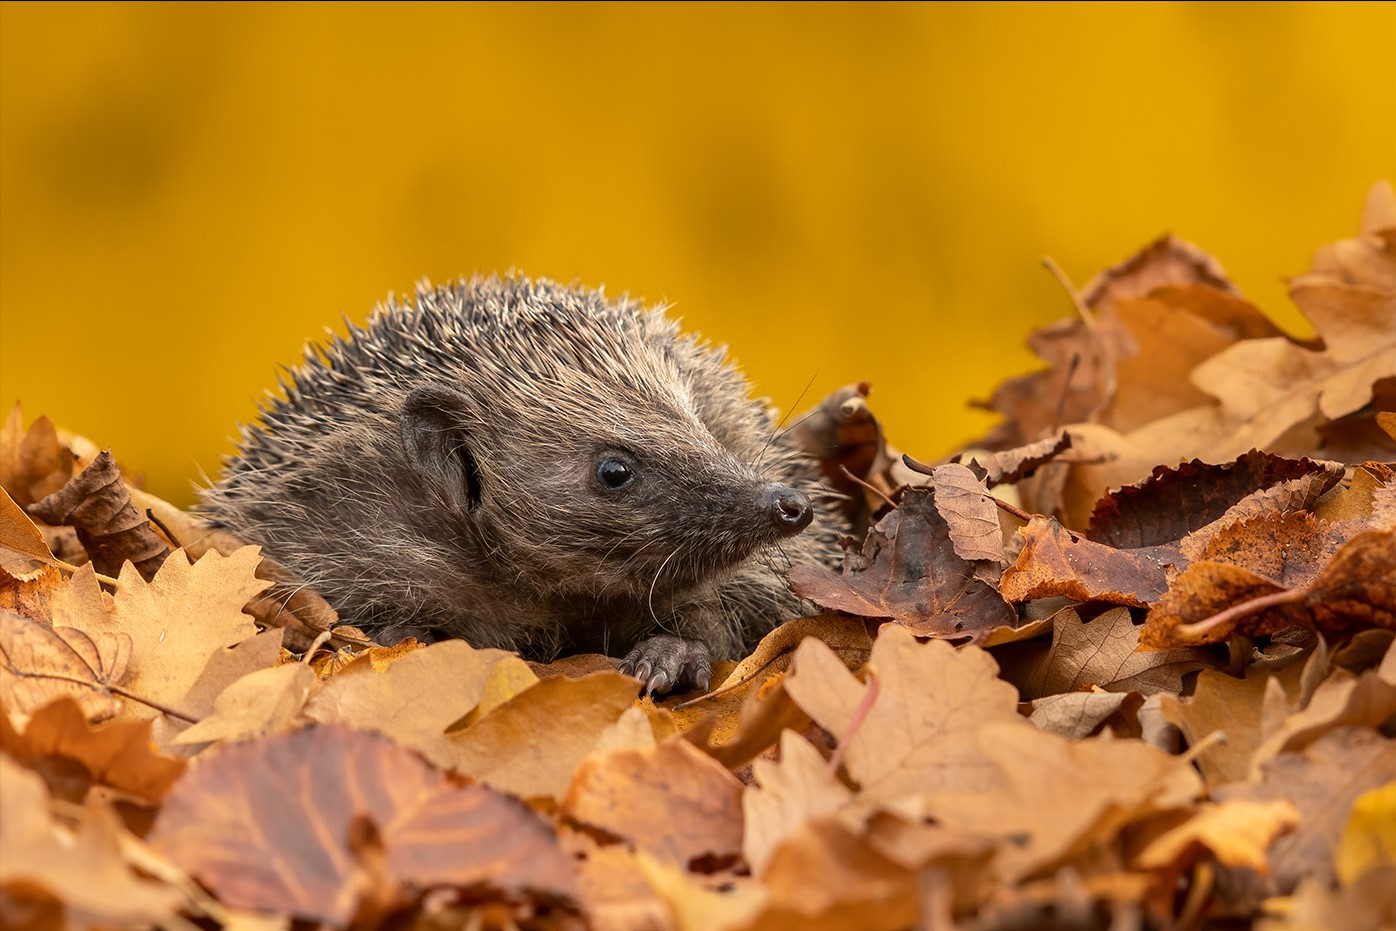 Hedgehog by Jeff Dakin